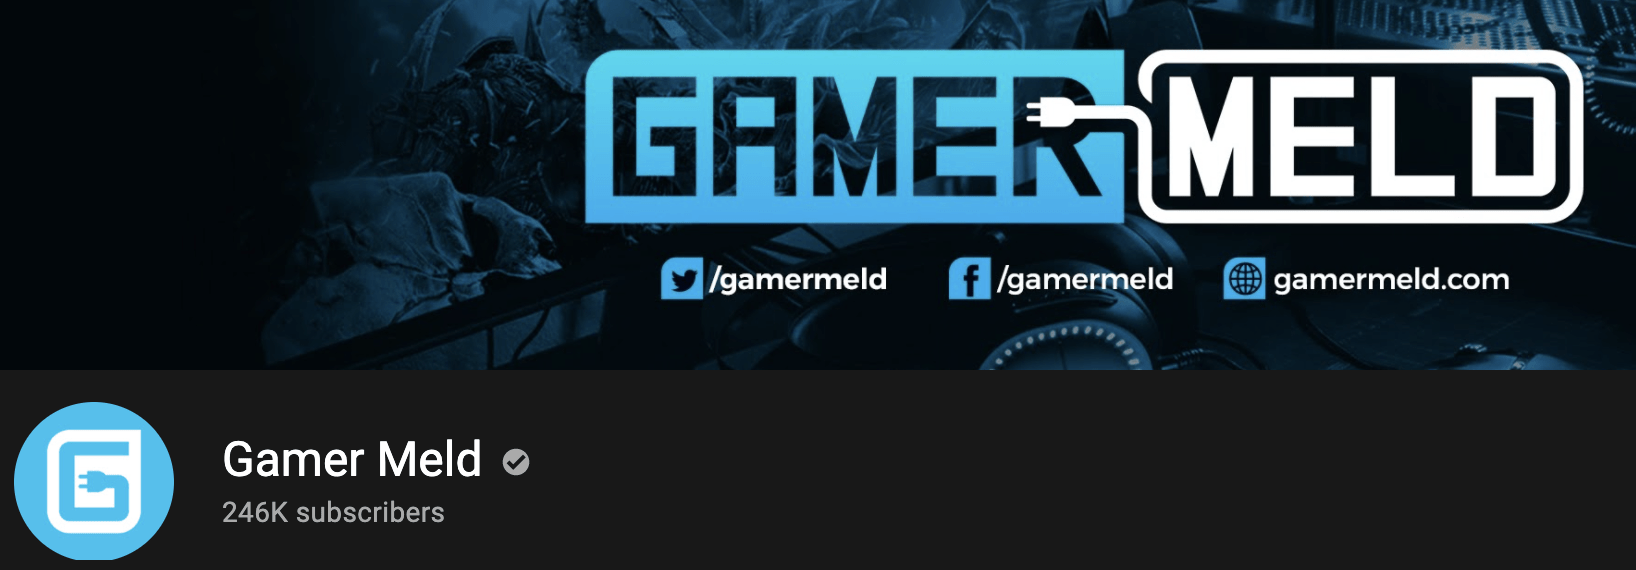 Gamer Meld YouTube Banner